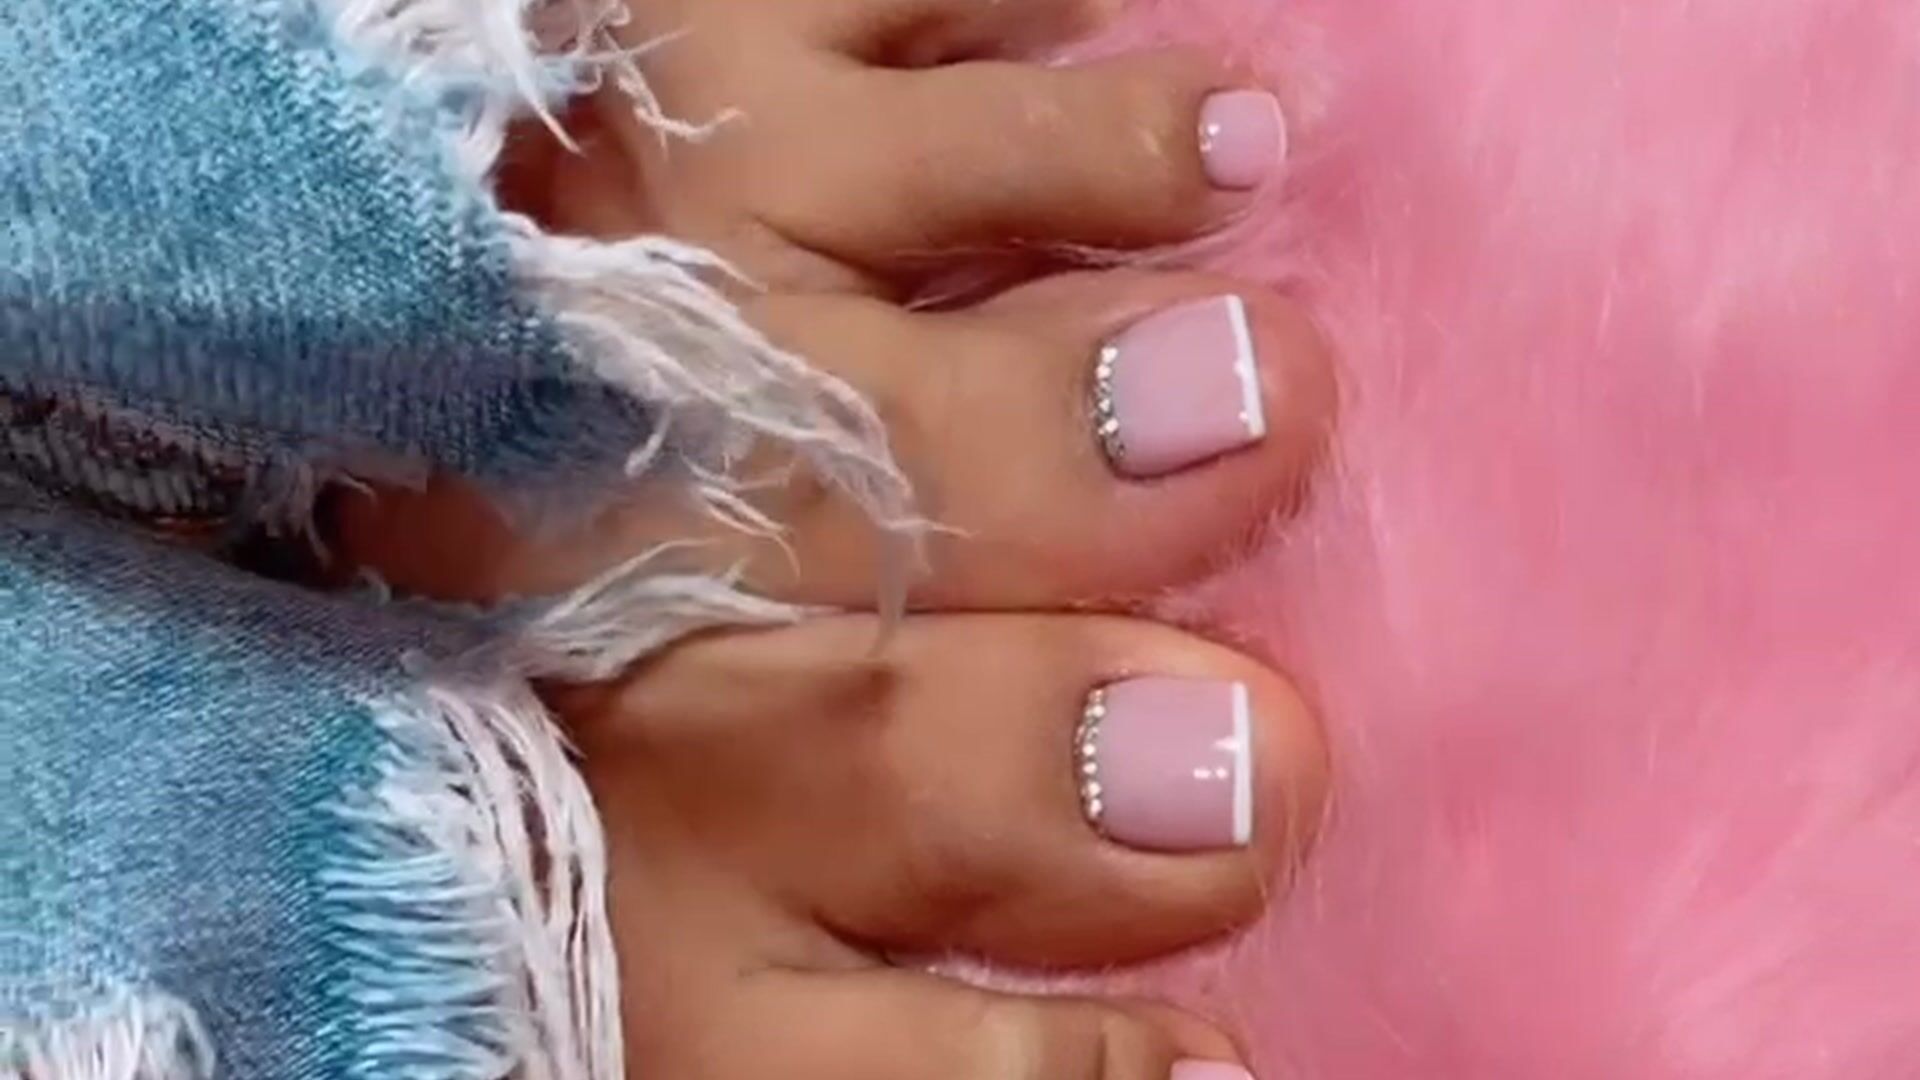 My toenails